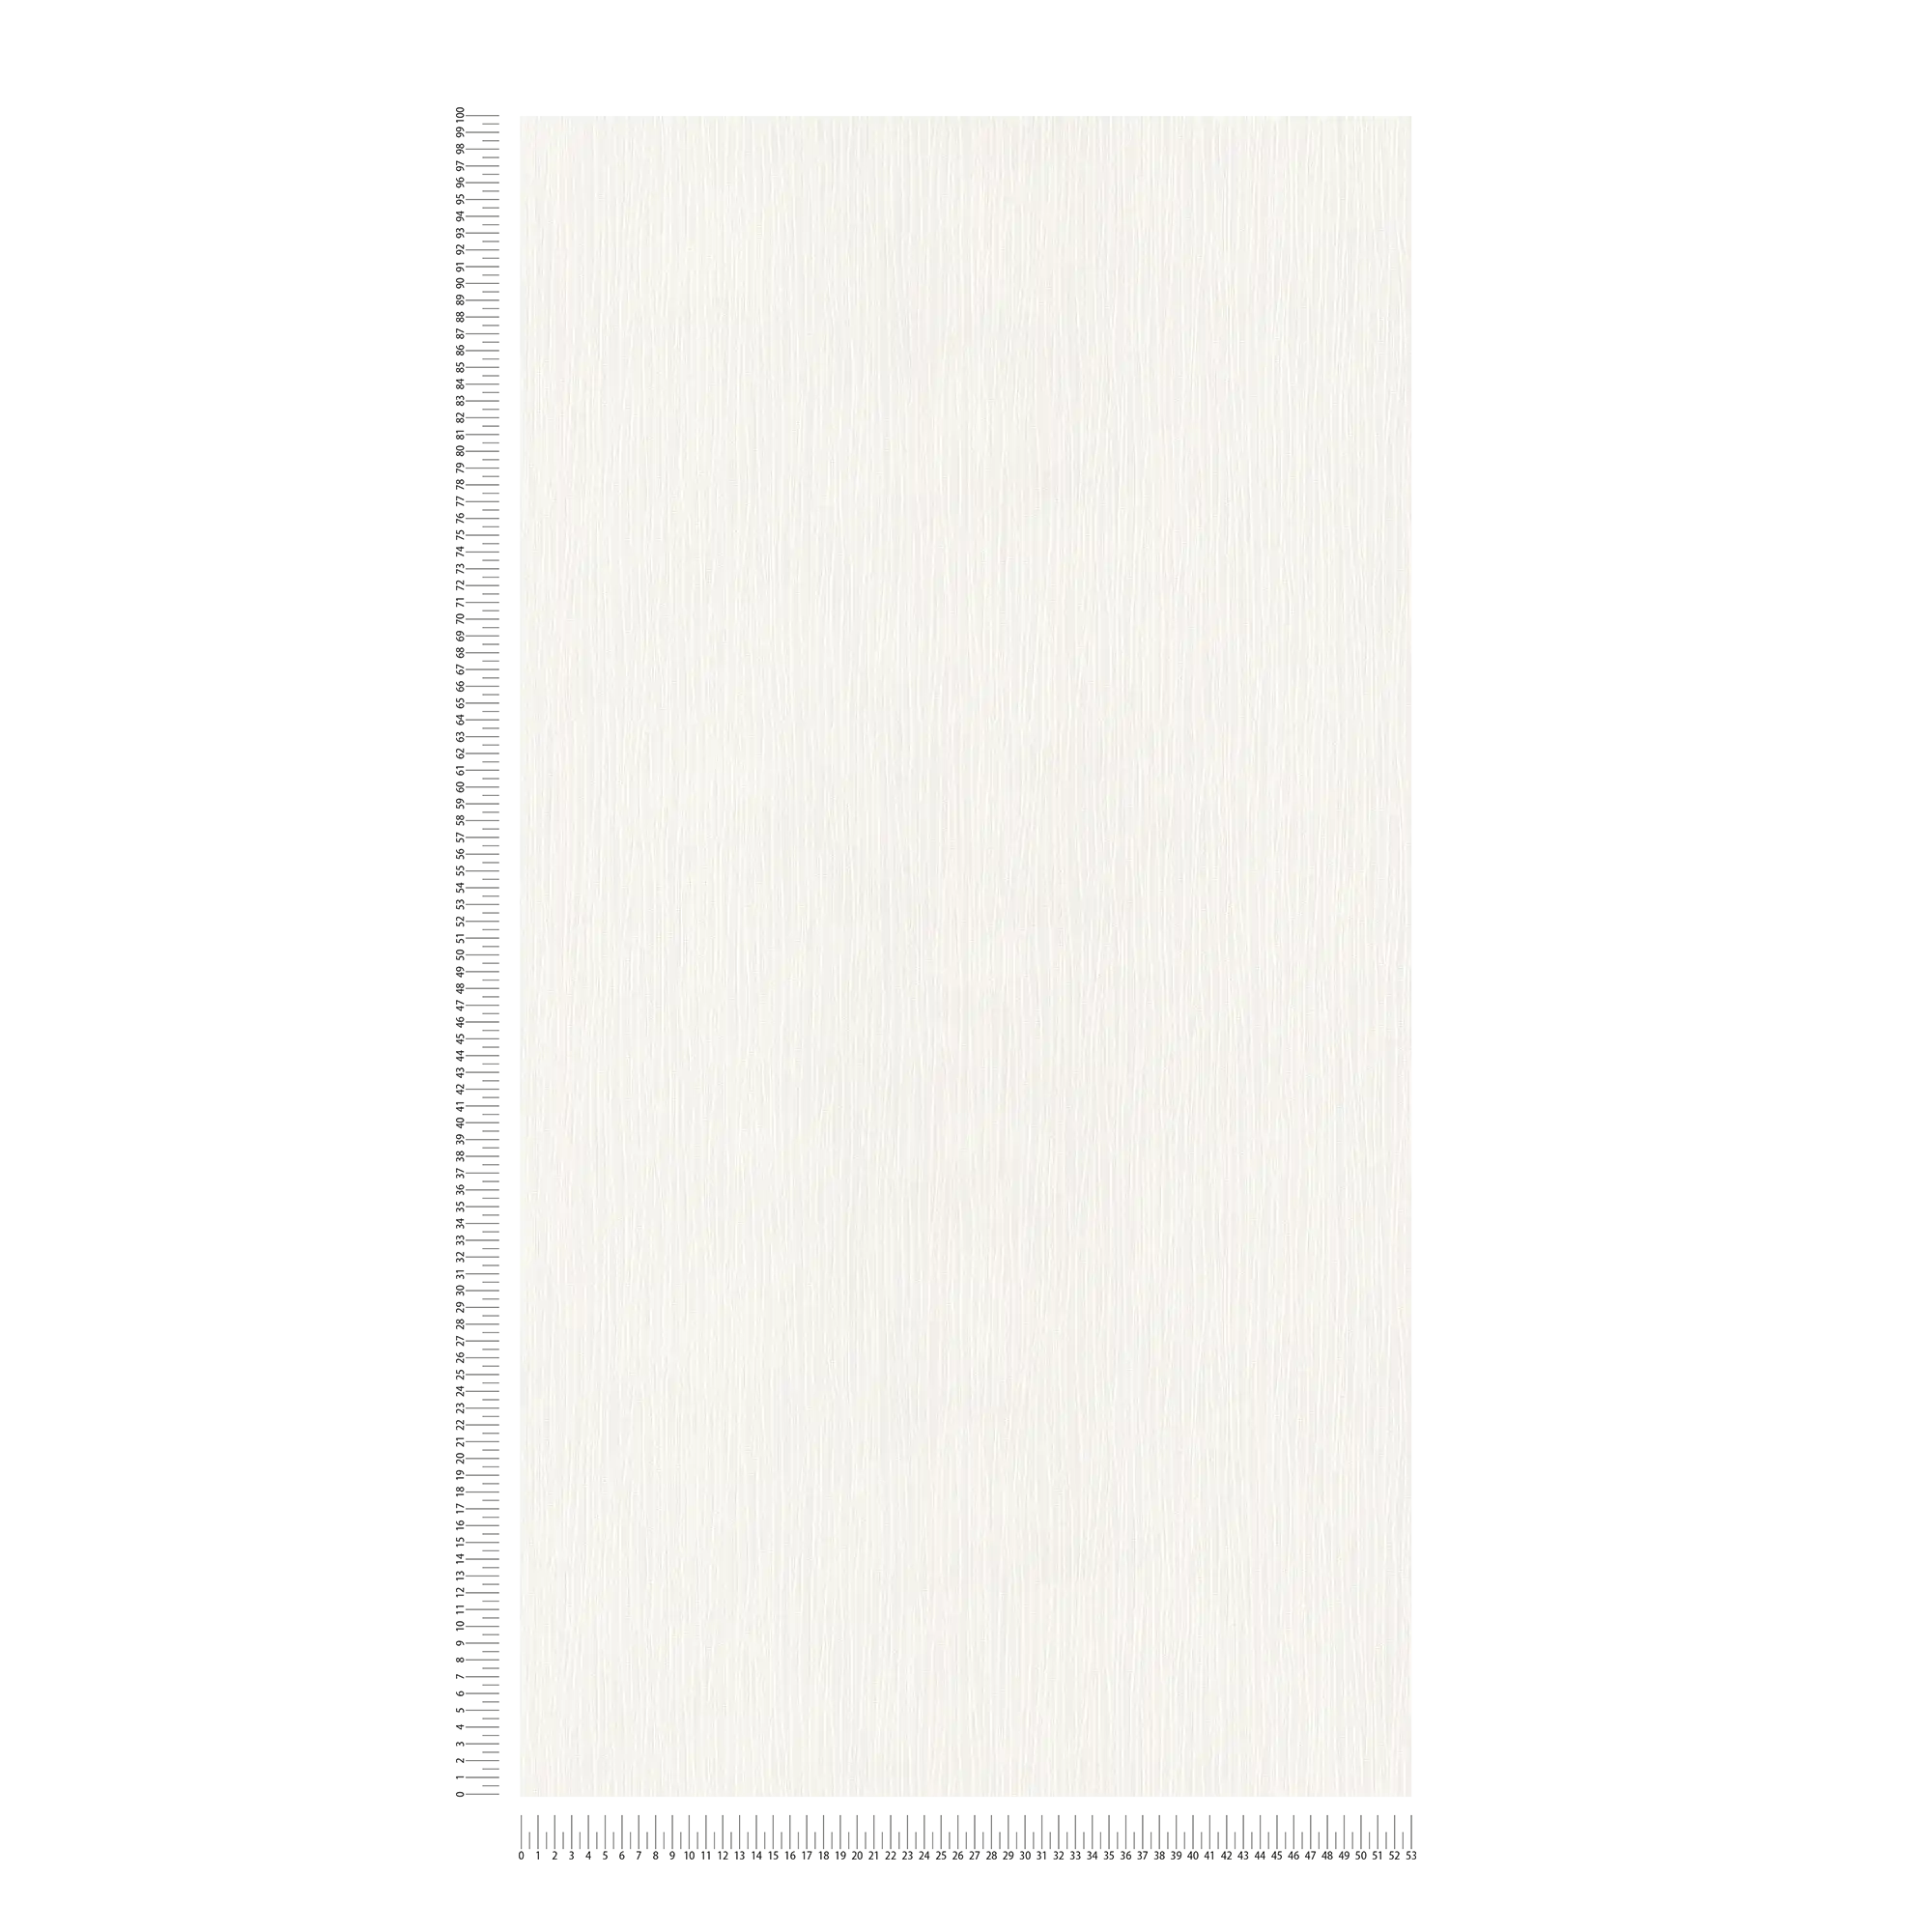             Papier peint blanc avec structure de lignes
        